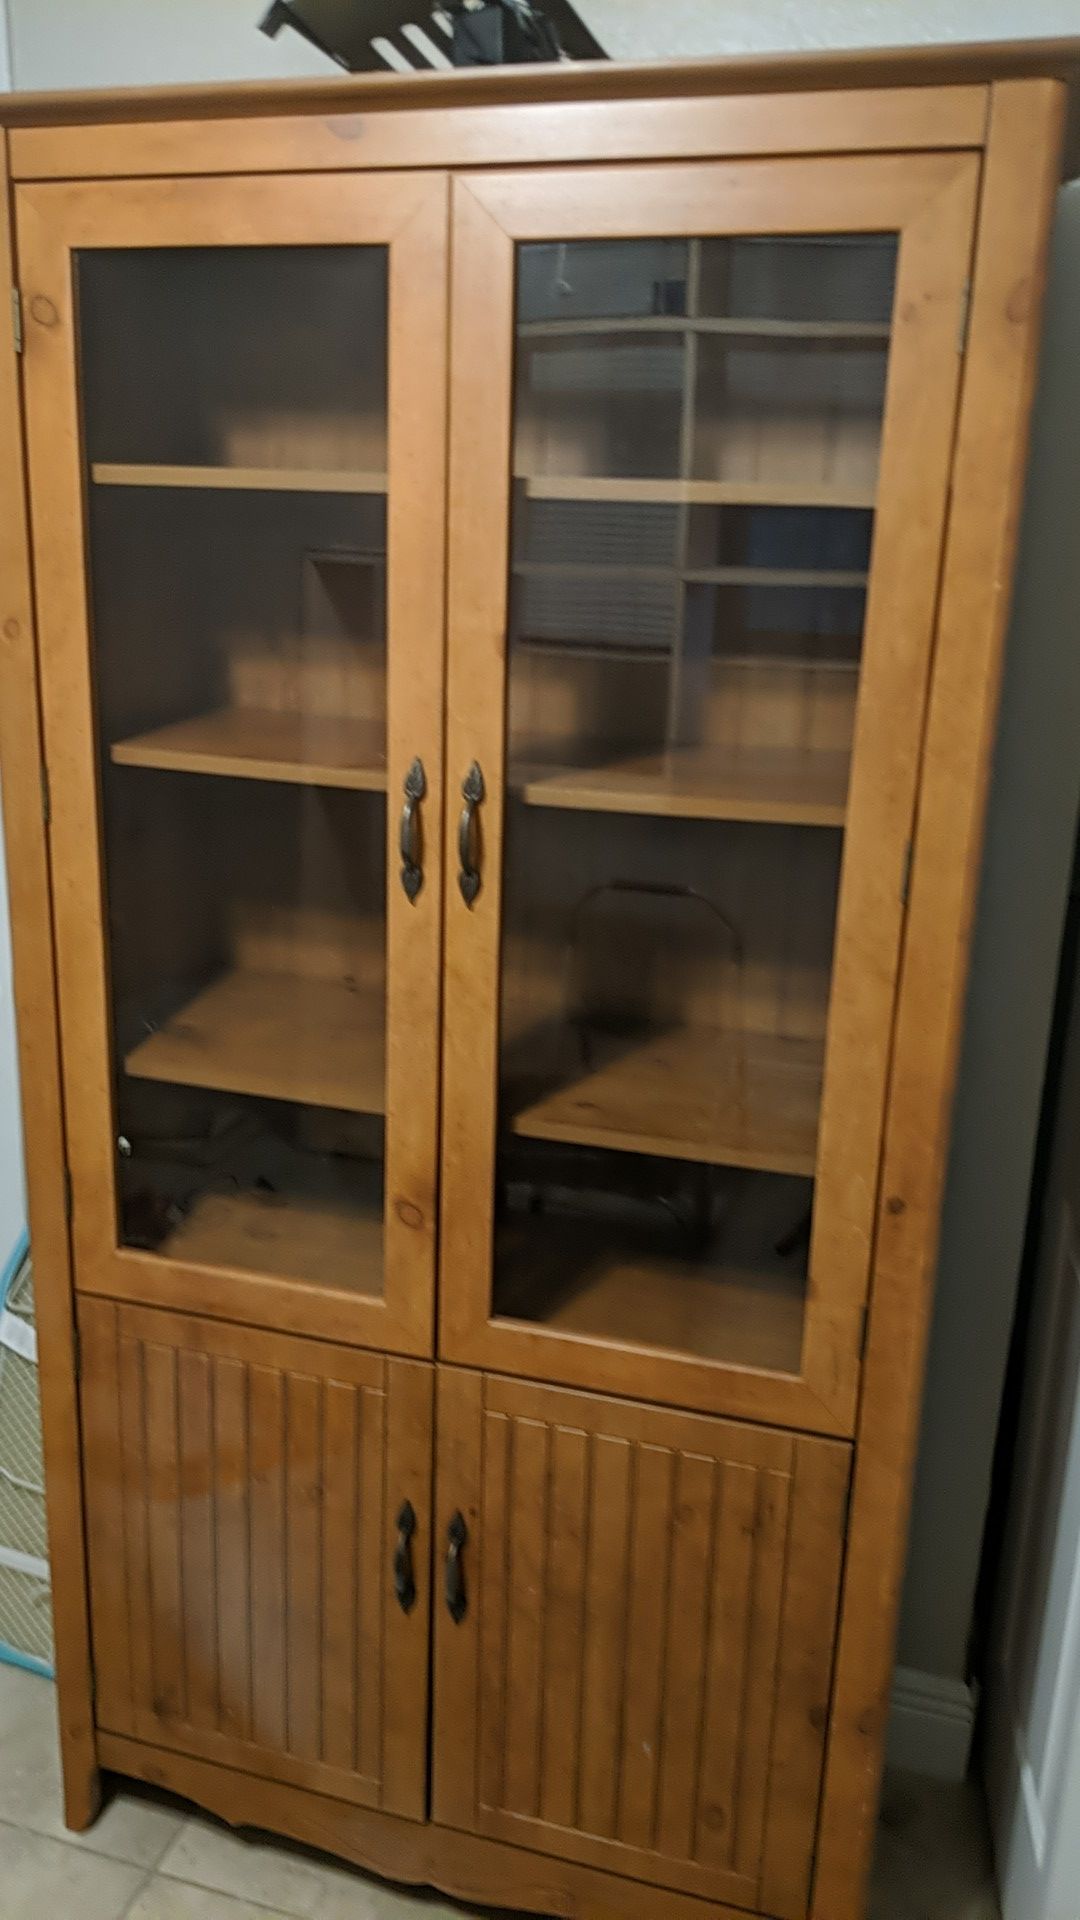 Bookshelf/Storage Cabinet